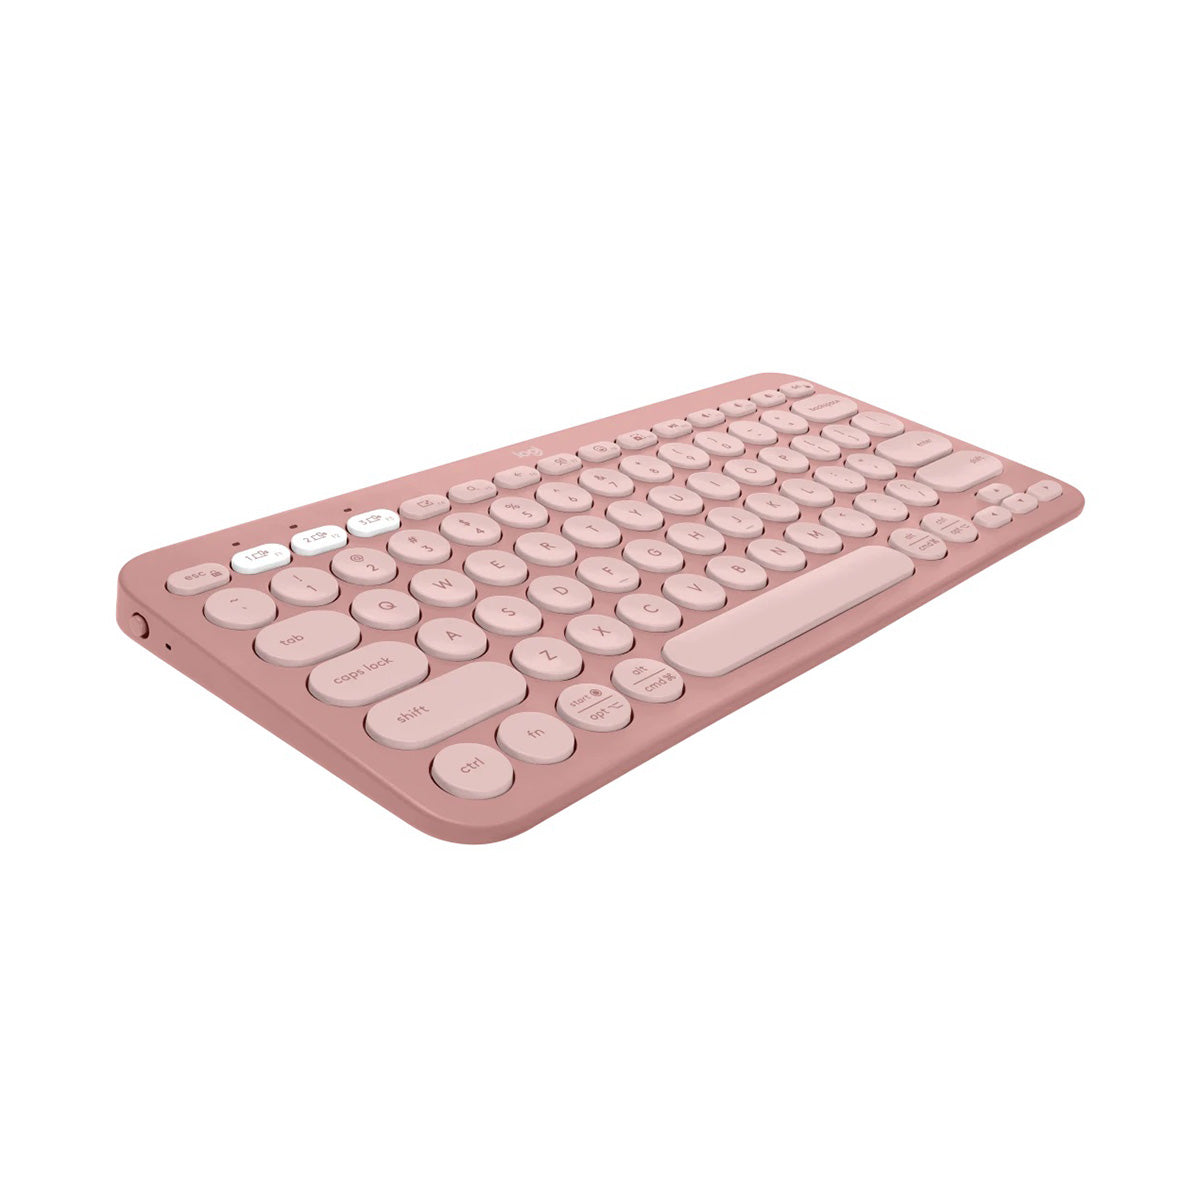 Logitech PEBBLE KEYS 2 K380S Keyboard